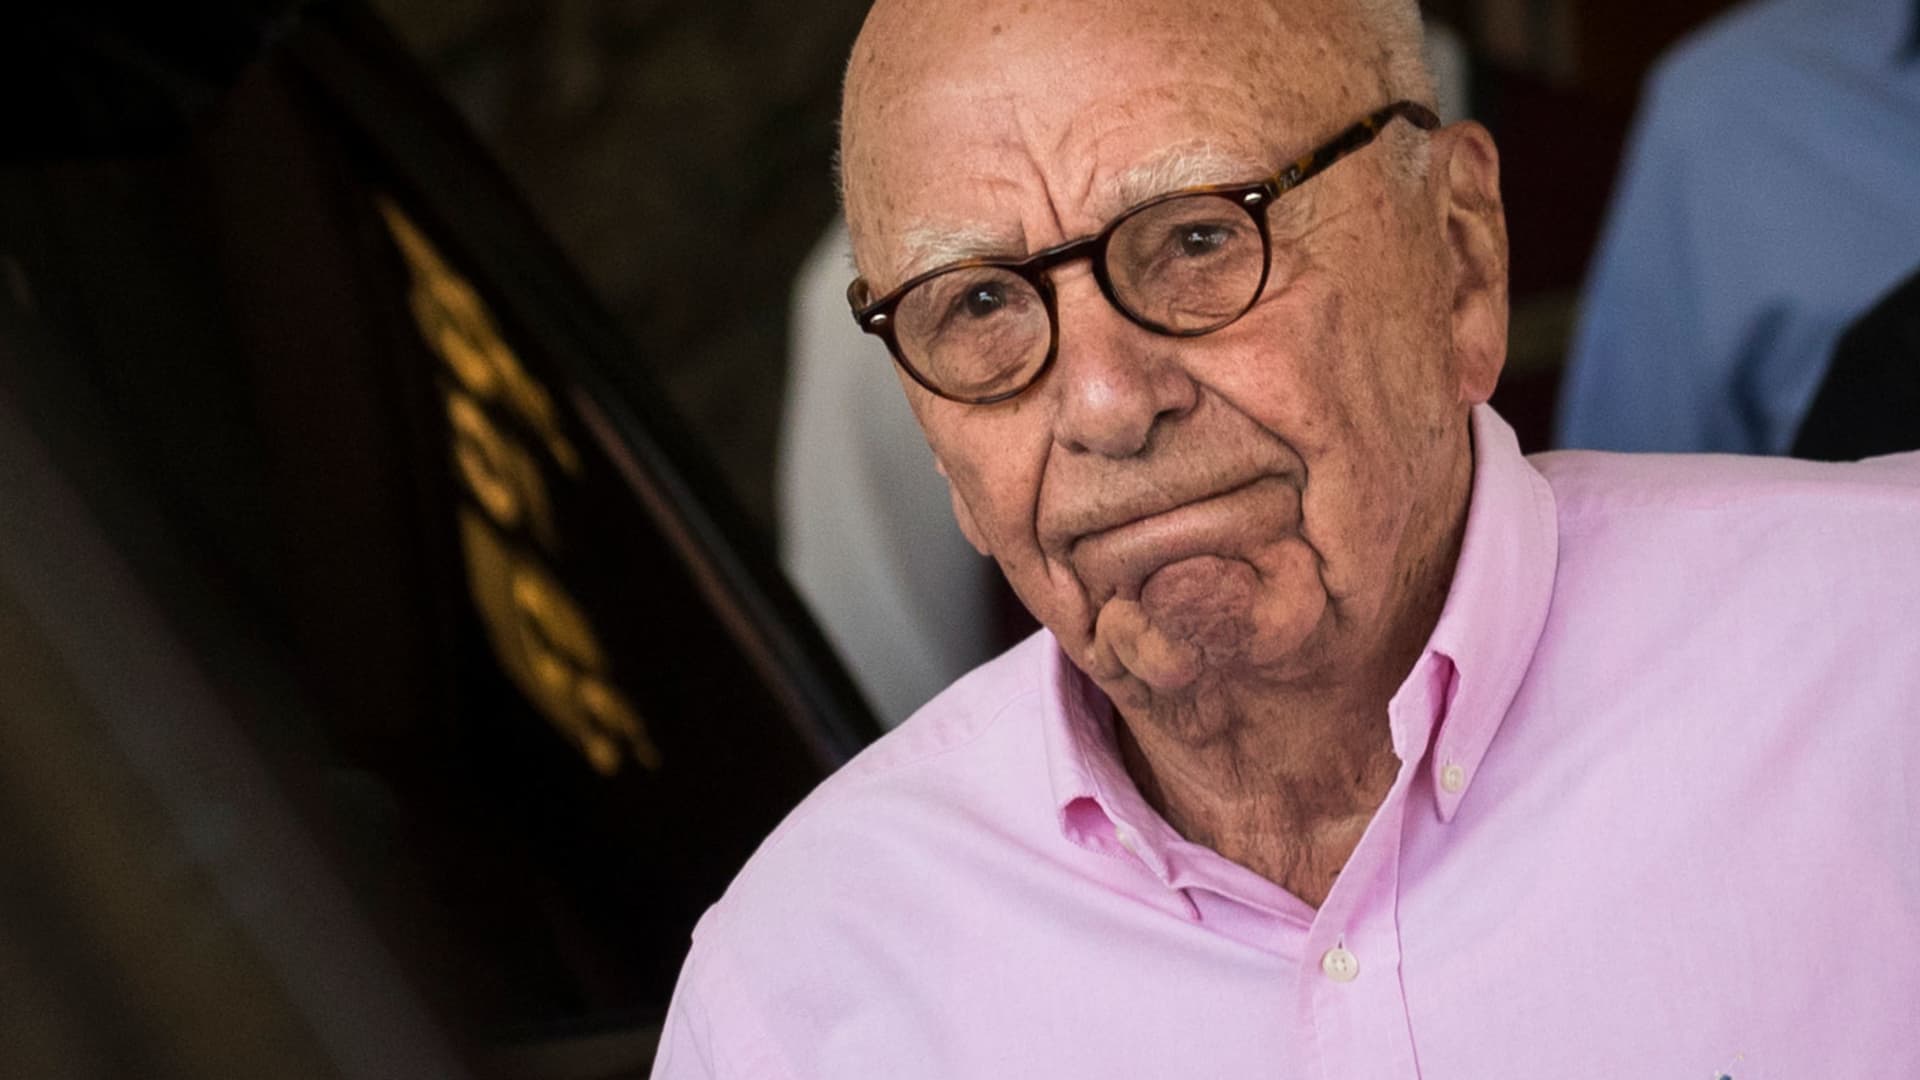 Rupert Murdoch will be deposed in Dominion's $1.6 billion lawsuit against Fox